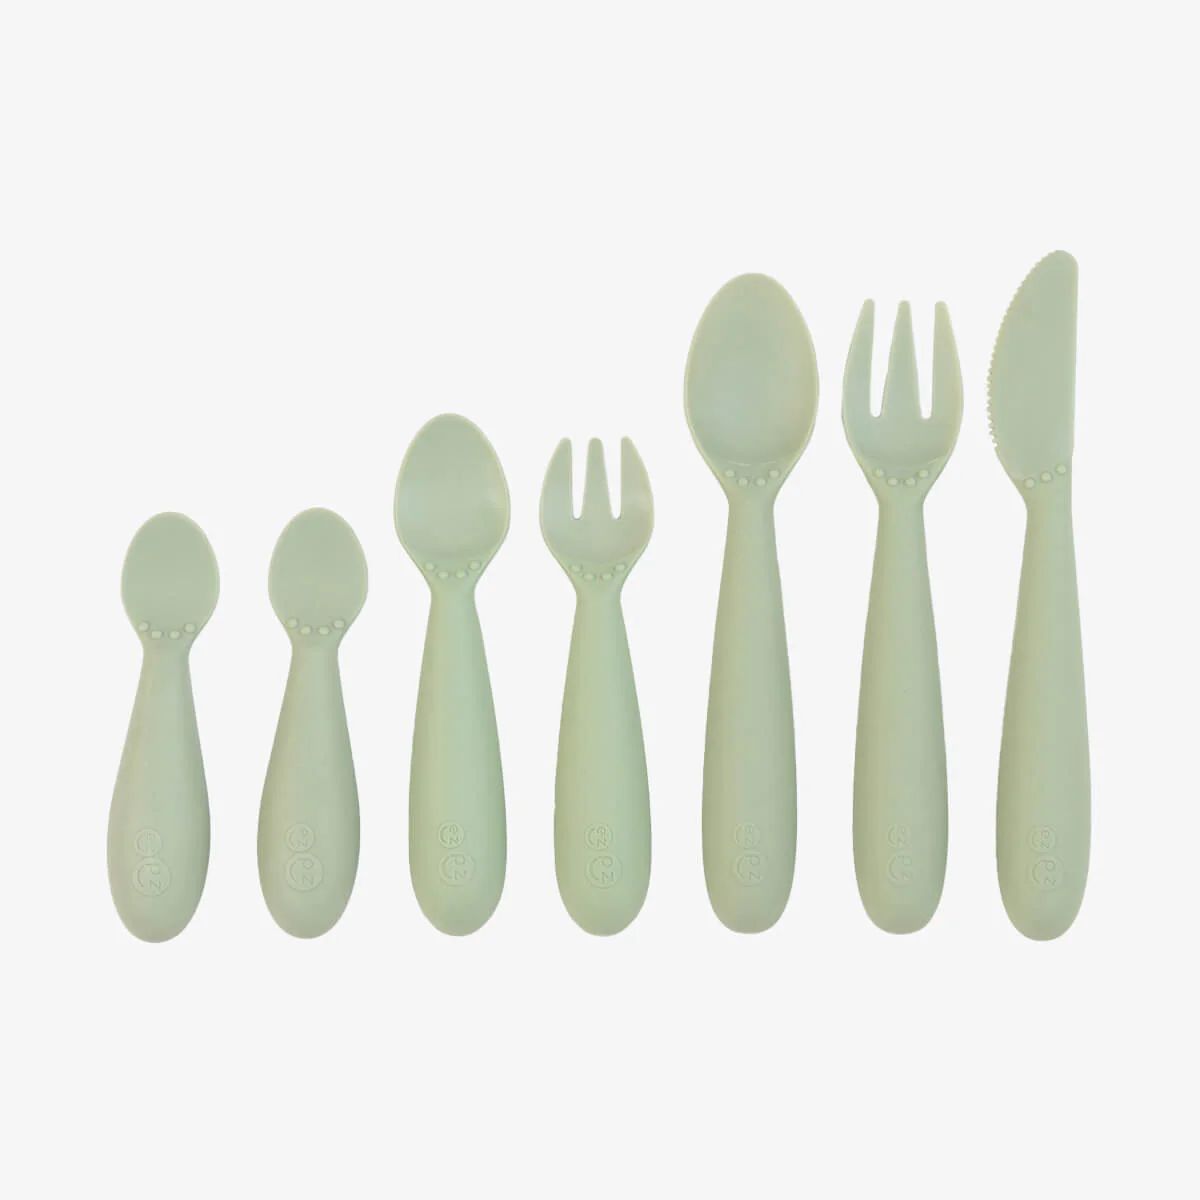 Developmental Utensil Set by ezpz / Spoon, Fork & Knife for Toddlers | ezpz